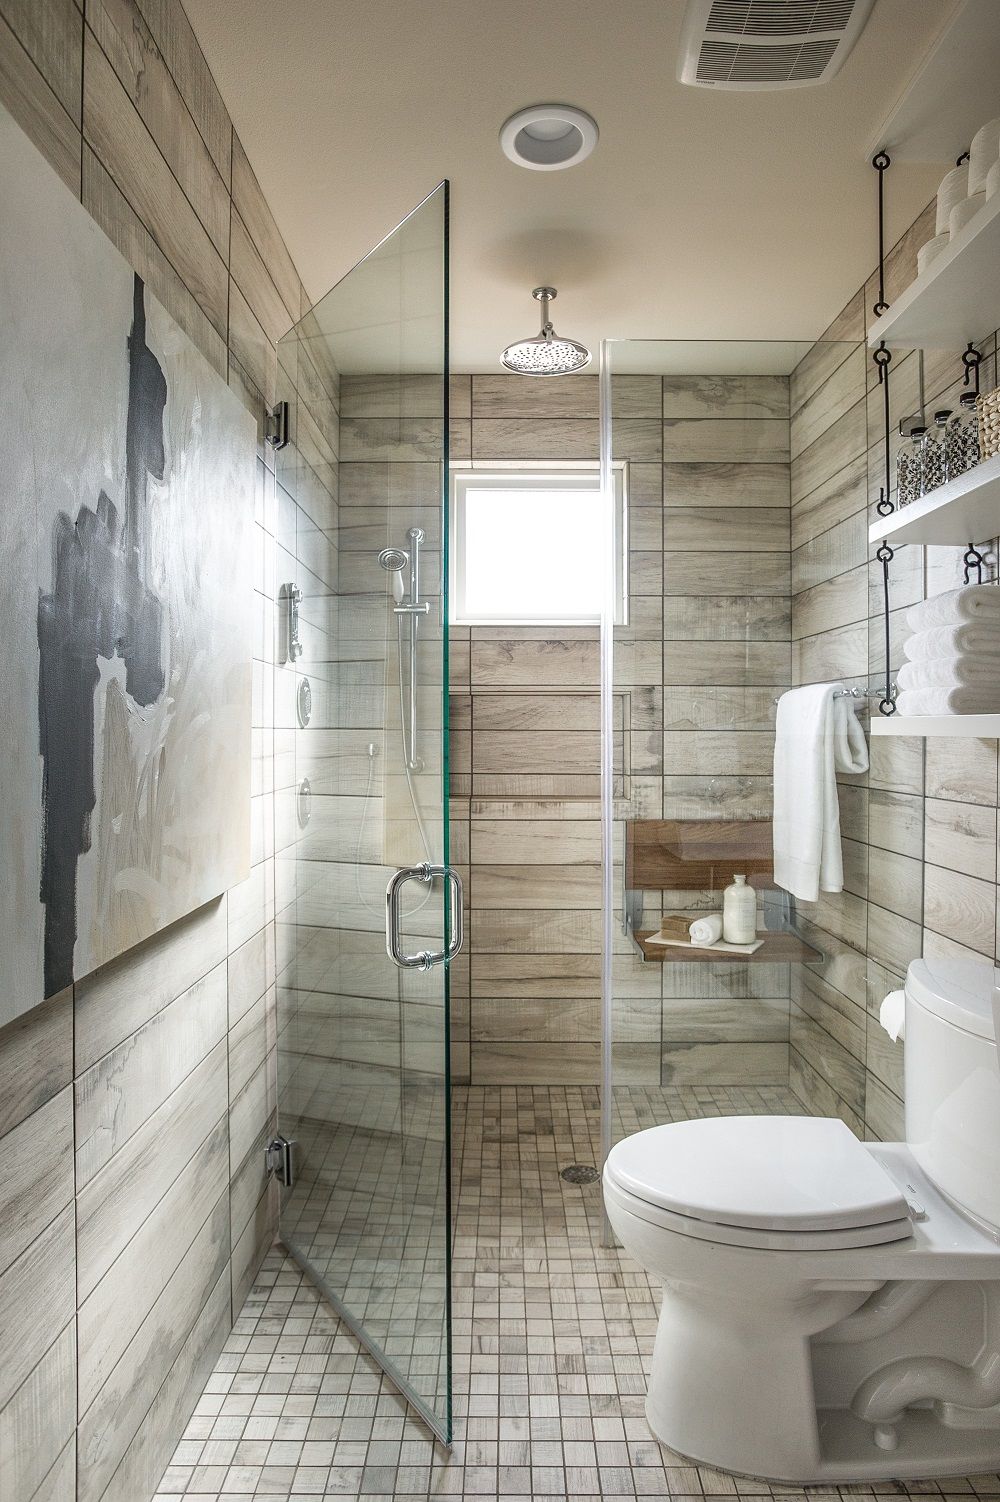 Thiết bị phòng tắm đẹp là một yếu tố quan trọng để tạo nên không gian tuyệt đẹp cho phòng tắm. Với sự kết hợp giữa thiết bị vệ sinh và trang trí, bạn sẽ có một không gian phòng tắm đẹp và tiện nghi. Chọn lựa thiết bị phù hợp với phong cách mà bạn yêu thích để tạo nên sự hoàn hảo.